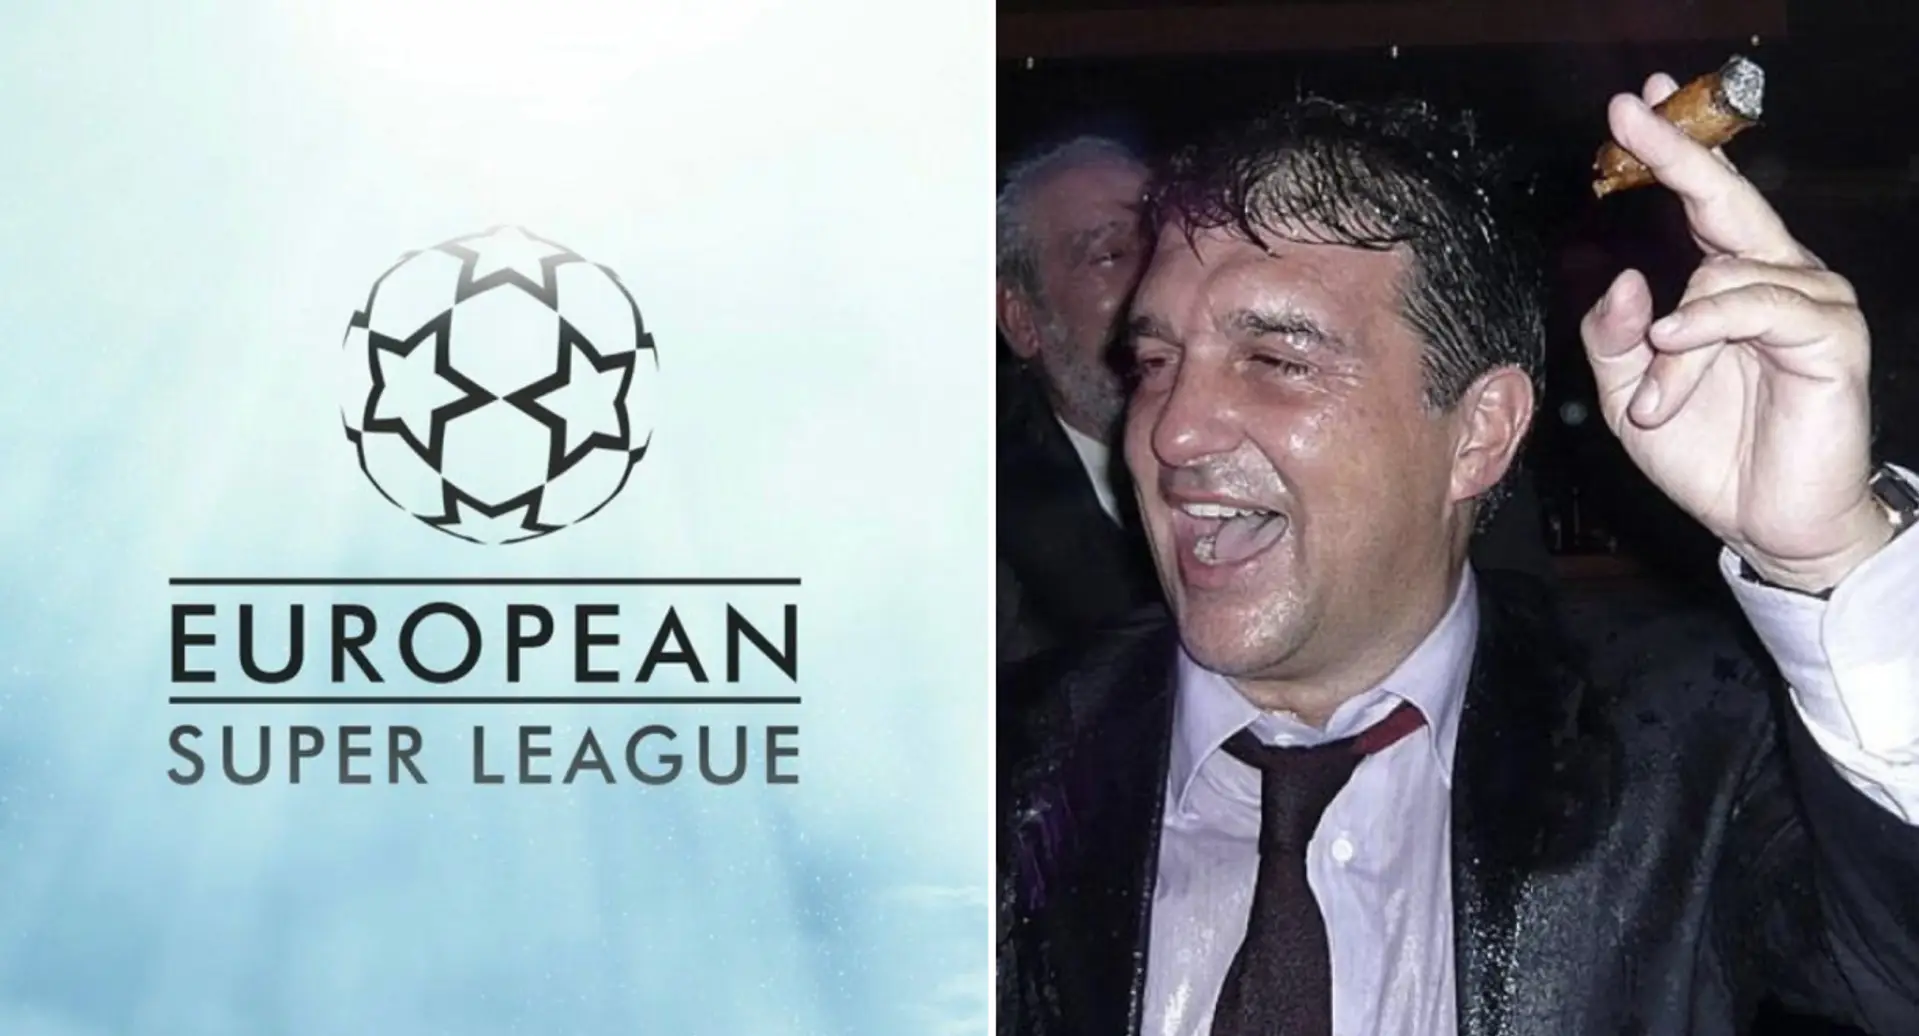 La Superliga europea vuelve a la carga tras el veredicto judicial contra las restricciones de la UEFA y la FIFA